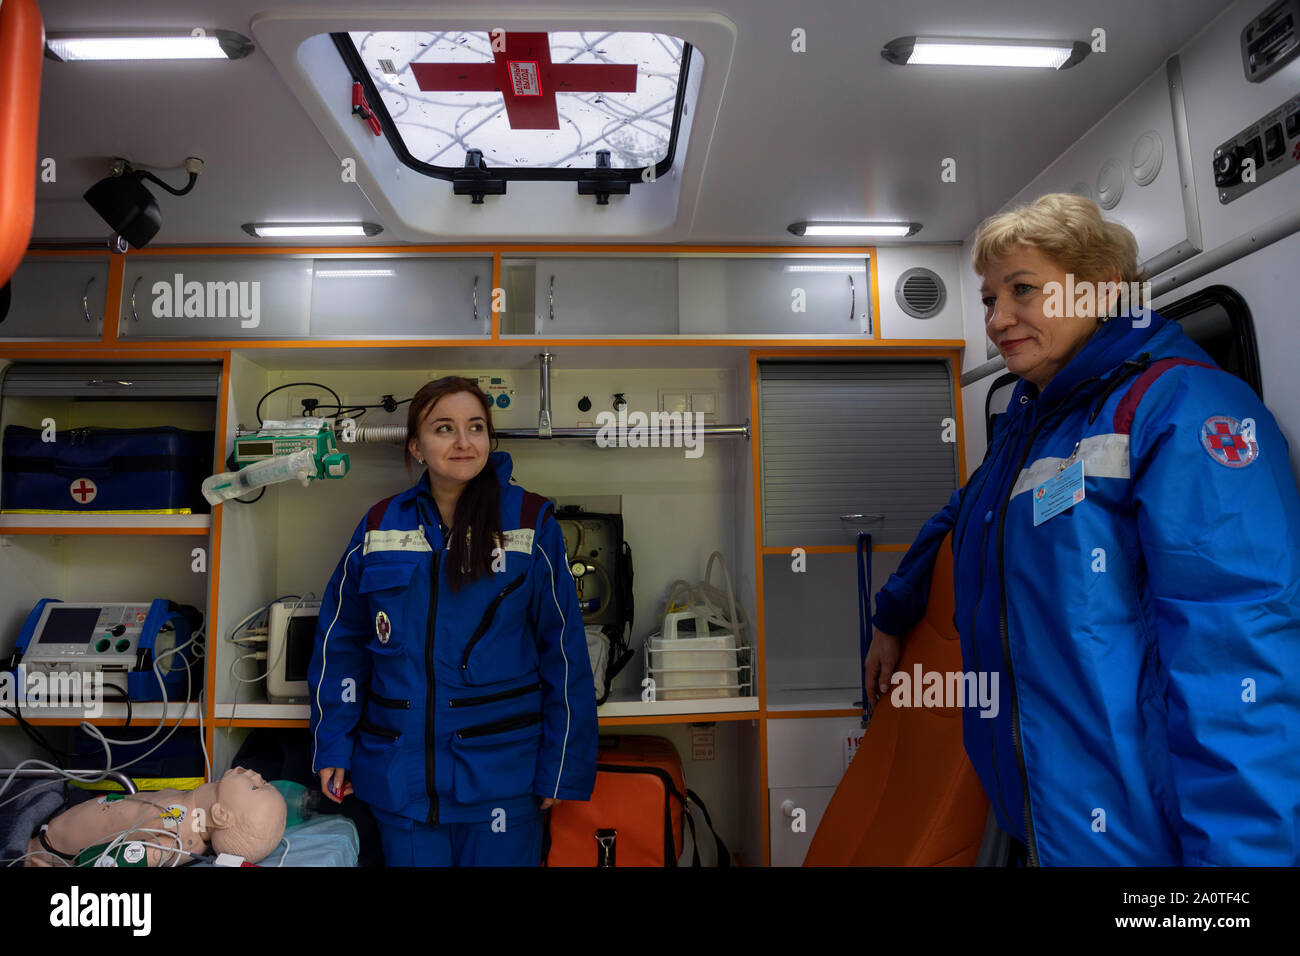 Une équipe d'ambulance à l'intérieur d'une unité de soins pédiatriques intensifs à Moscou, Russie Banque D'Images